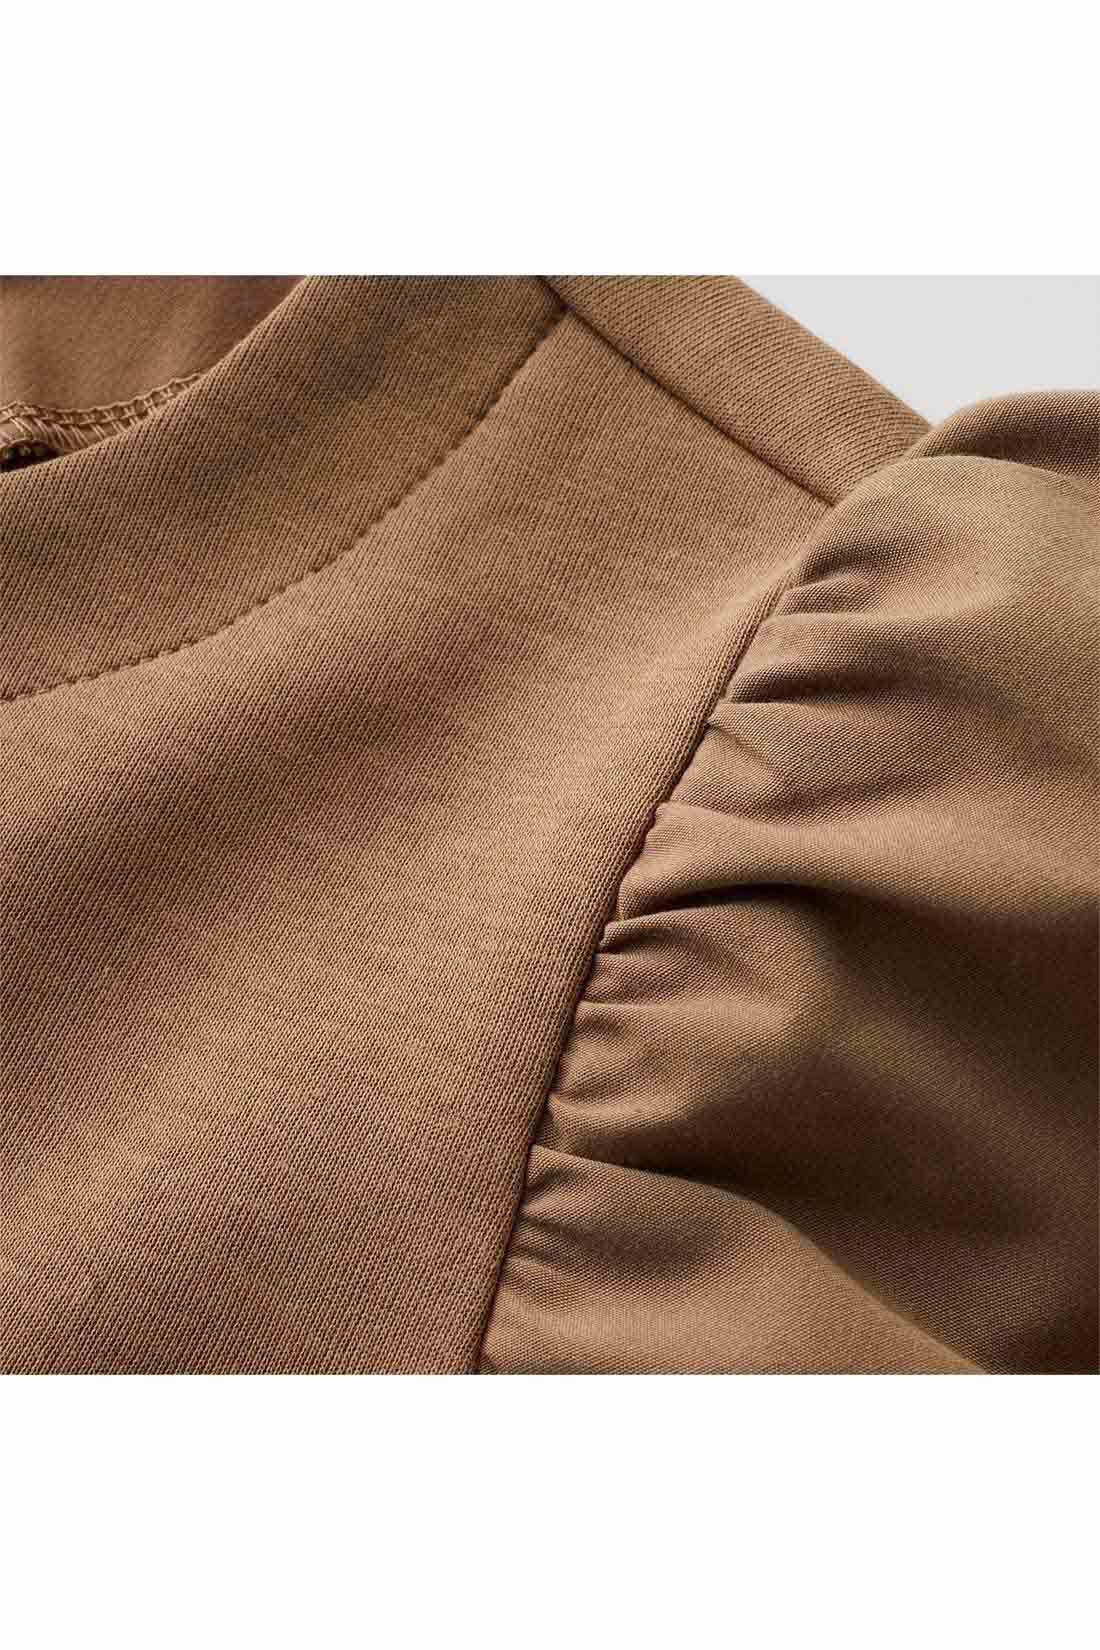 IEDIT|IEDIT[イディット]　ふんわり袖デザインが華やかな 異素材切り替えプルオーバー〈モカ〉|袖は張り感のある布はく素材で軽やかに。身ごろはほどよく厚みがあり表面感のきれいなカットソー素材。 ※お届けするカラーとは異なります。